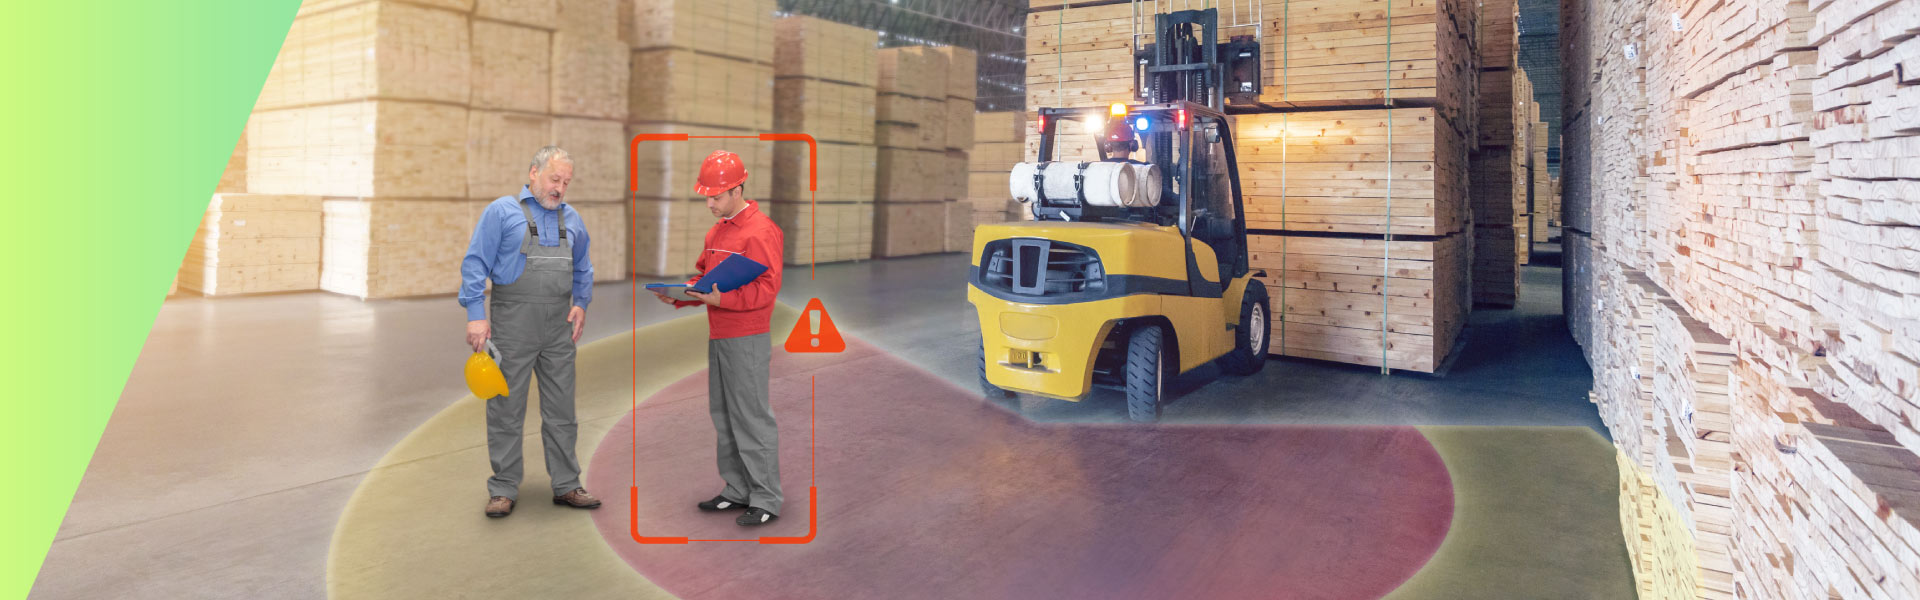 VIA Mobile360 Forklift Safety System 3PD Logimat